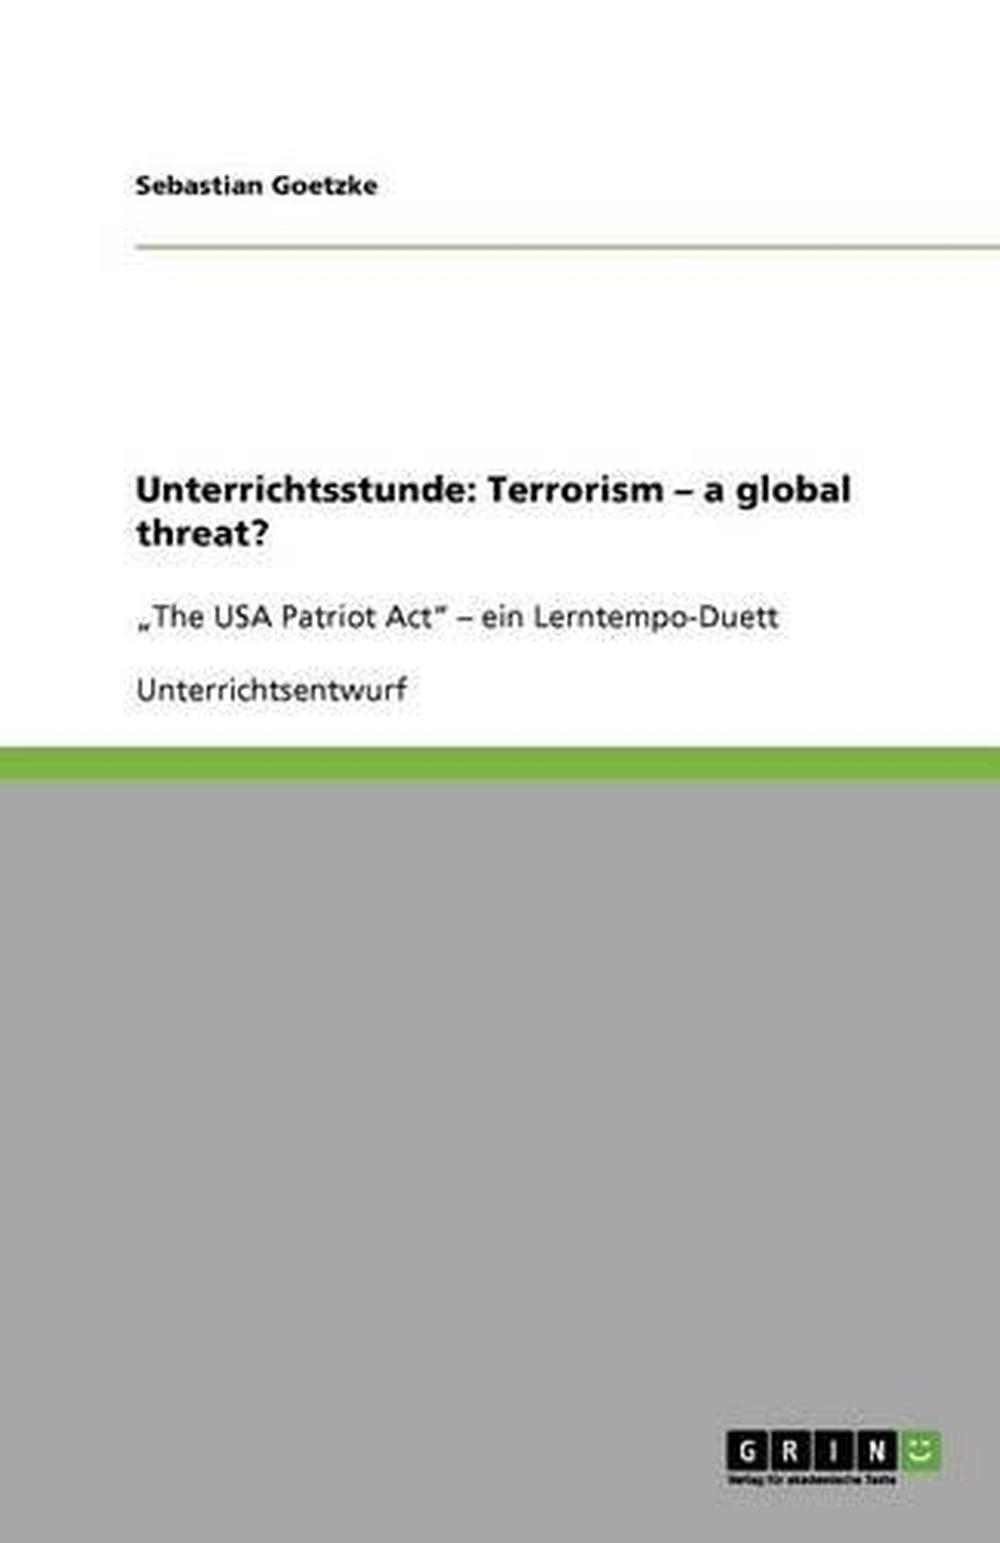 Unterrichtsstunde: Terrorism - A Global Threat?: "The USA Patriot Act" - ein Ler - Picture 1 of 1